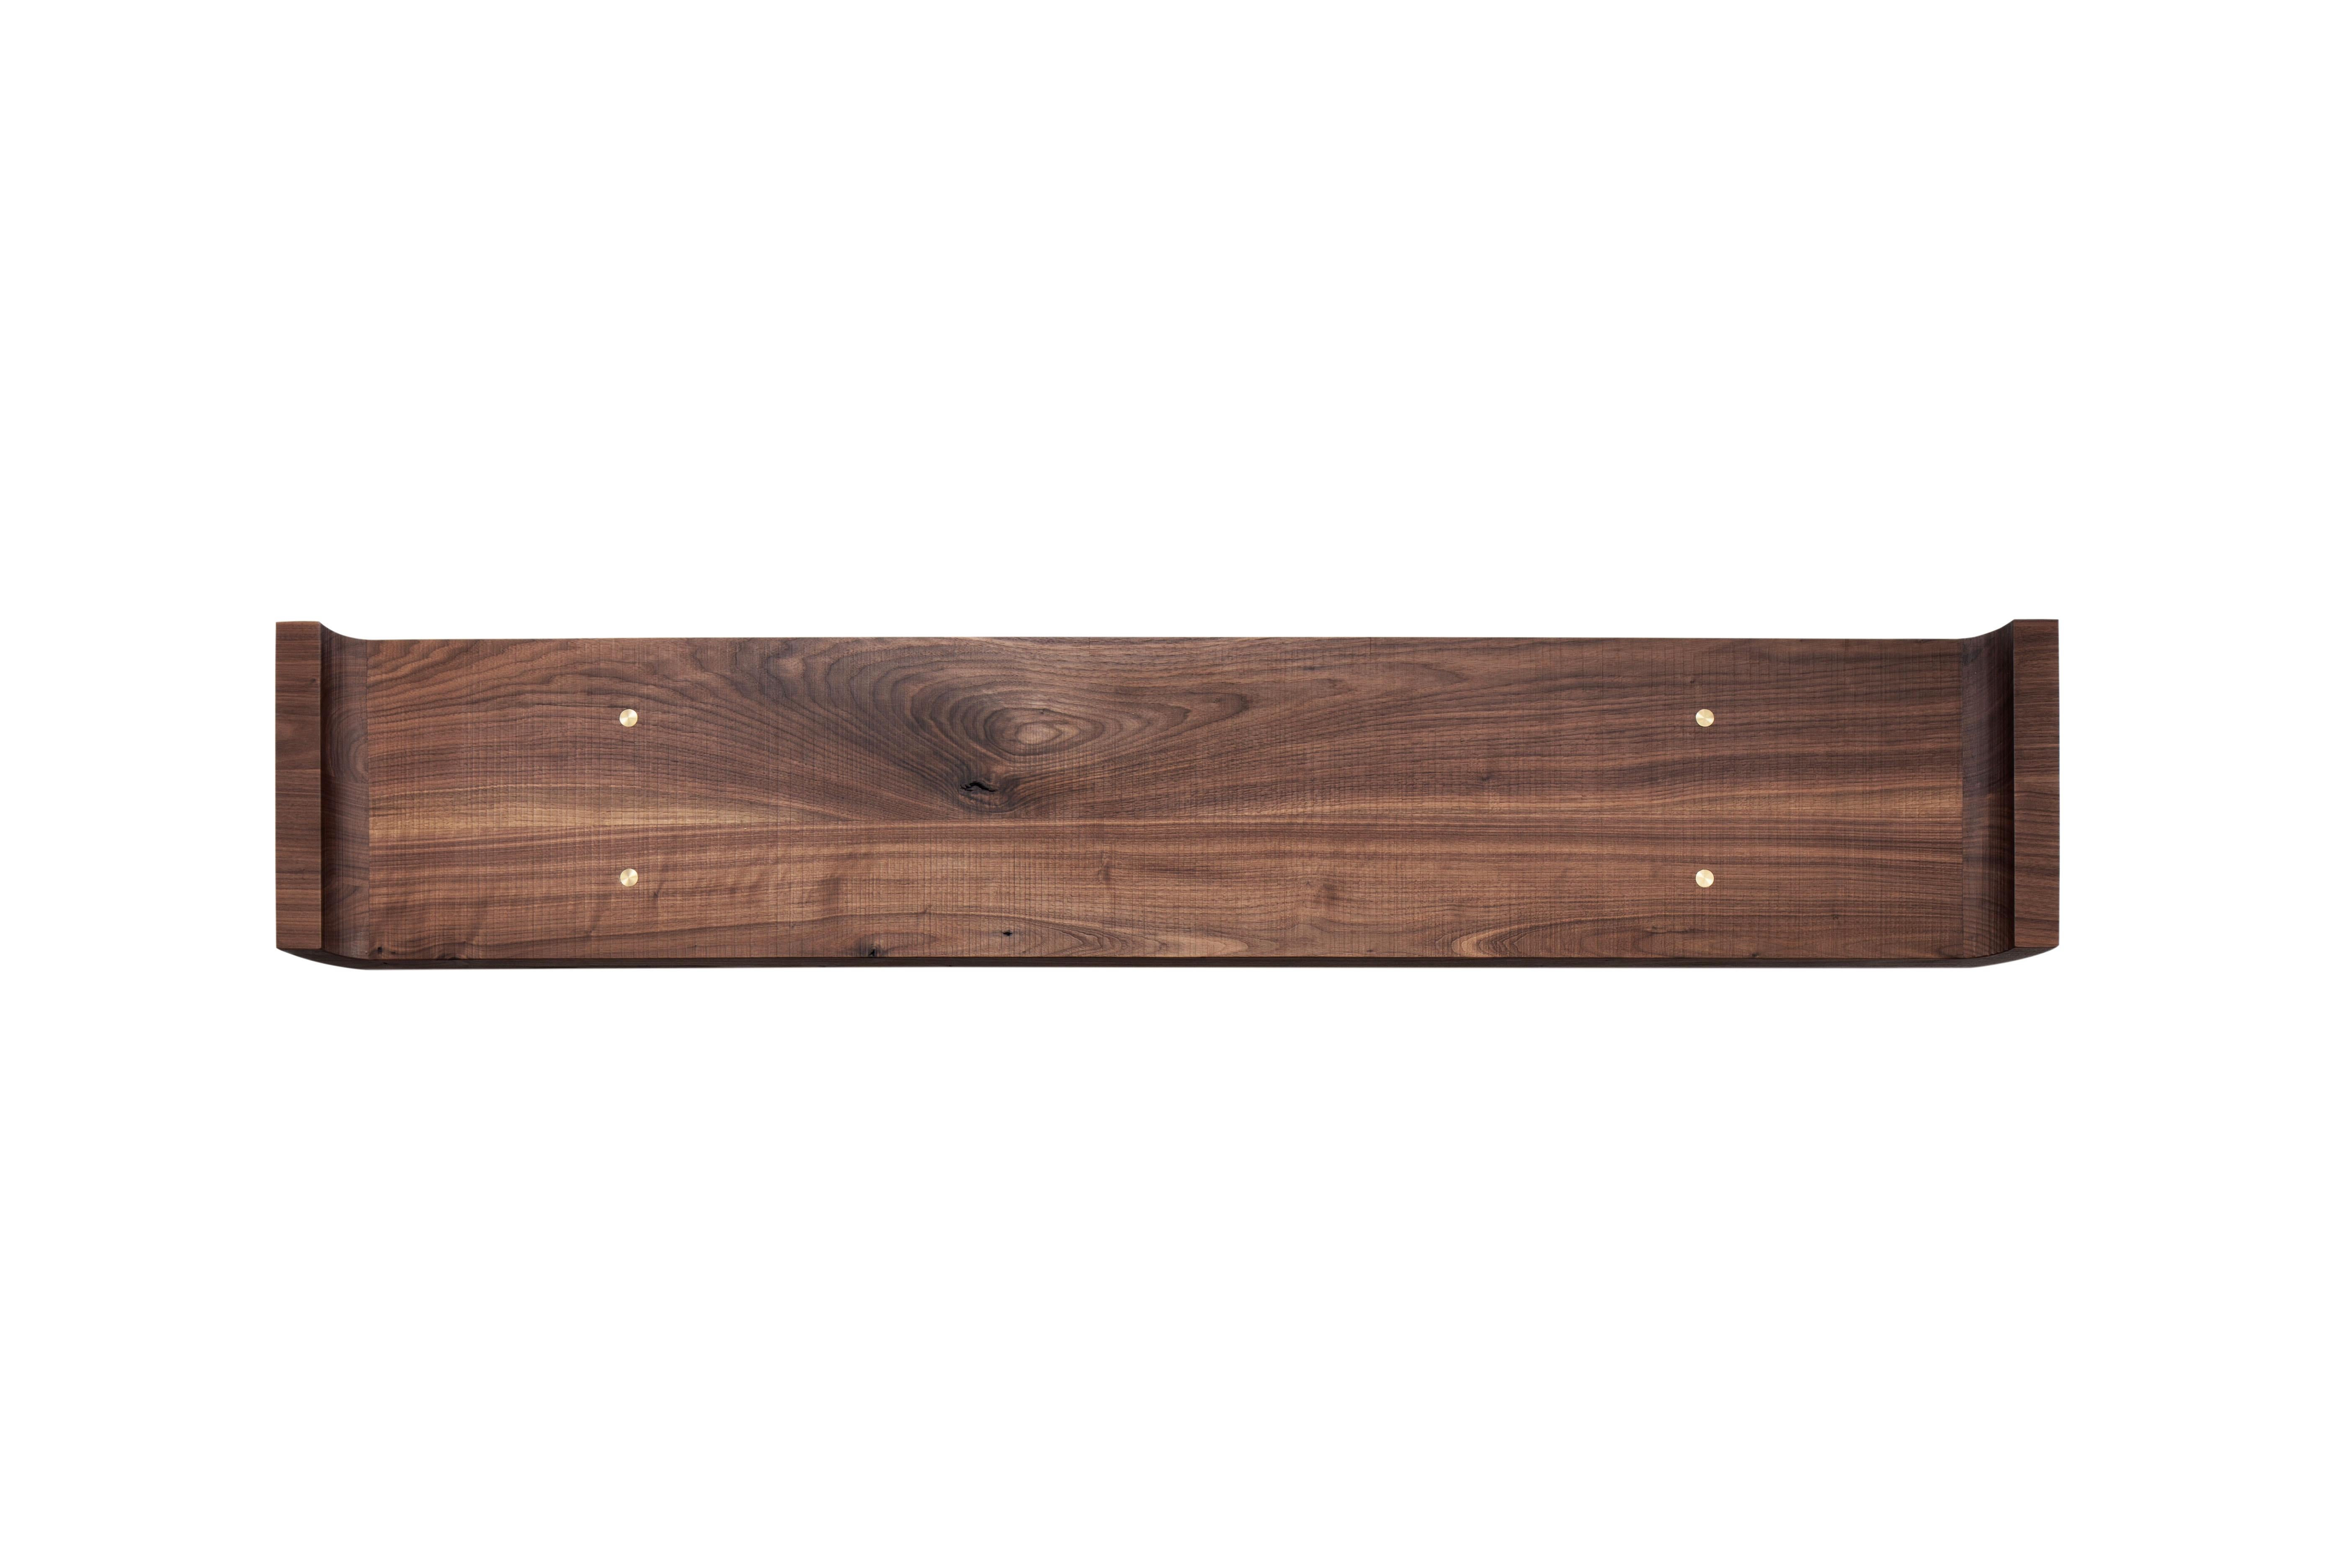 Die moderne Holzbank QD02 ist aus Walnussholz mit Messingdetails gefertigt. Jedes Stück wird aus einem einzigartigen Stück Holz gefertigt, so dass jedes Stück eine Einzelanfertigung ist.

Bitte beachten Sie, dass aufgrund des derzeitigen Anstiegs